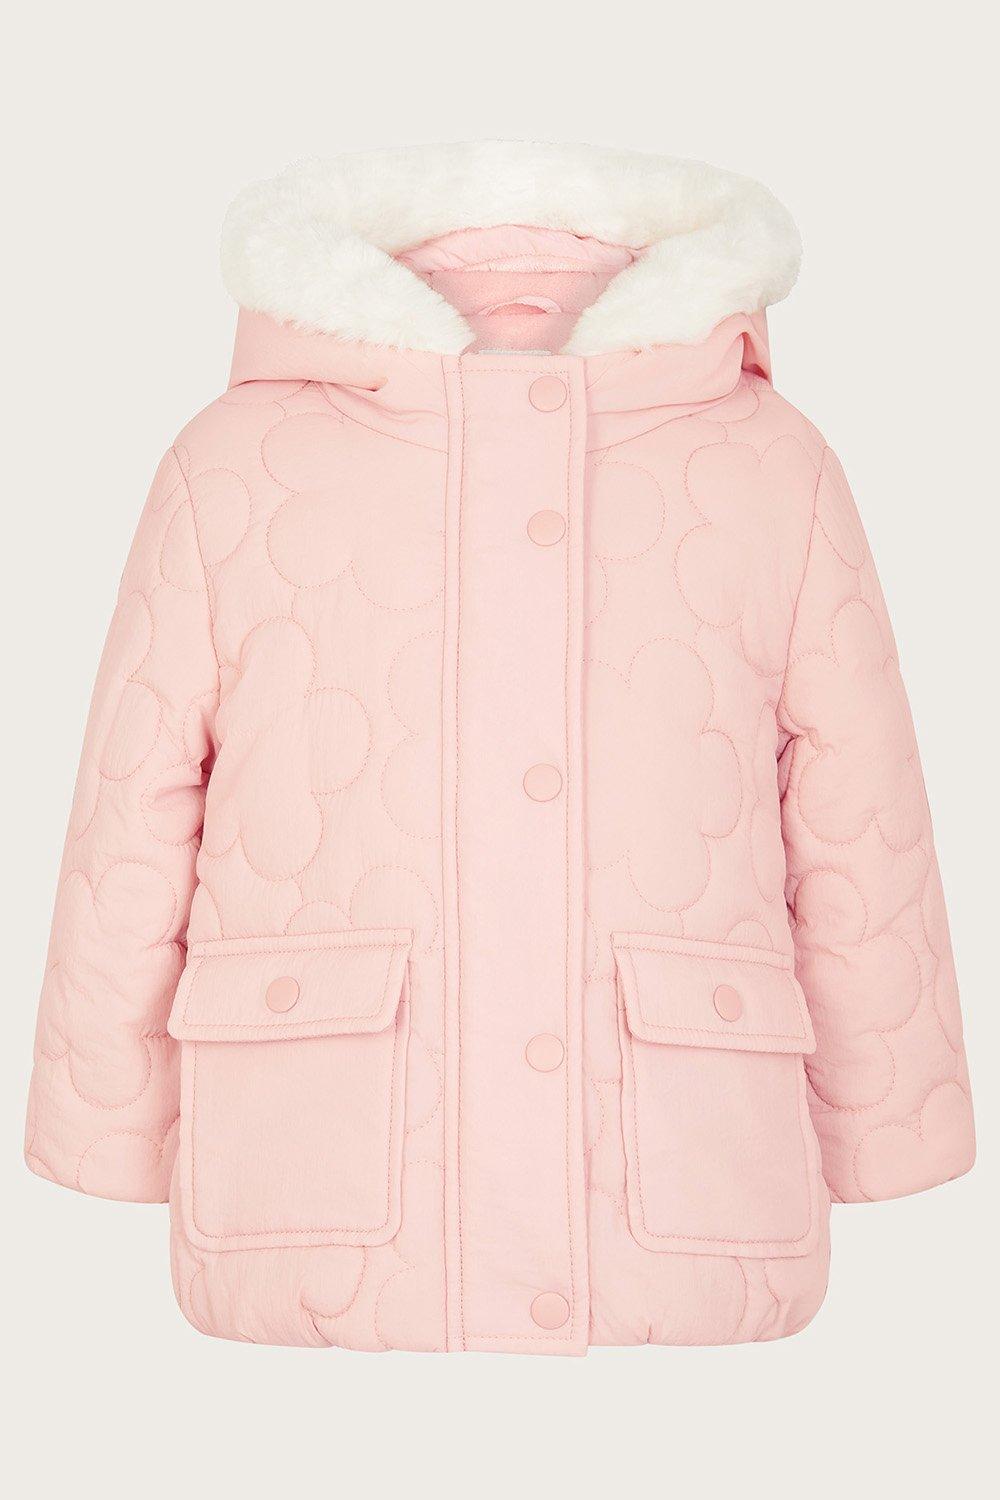 Детское стеганое пальто с цветочным принтом Monsoon, розовый